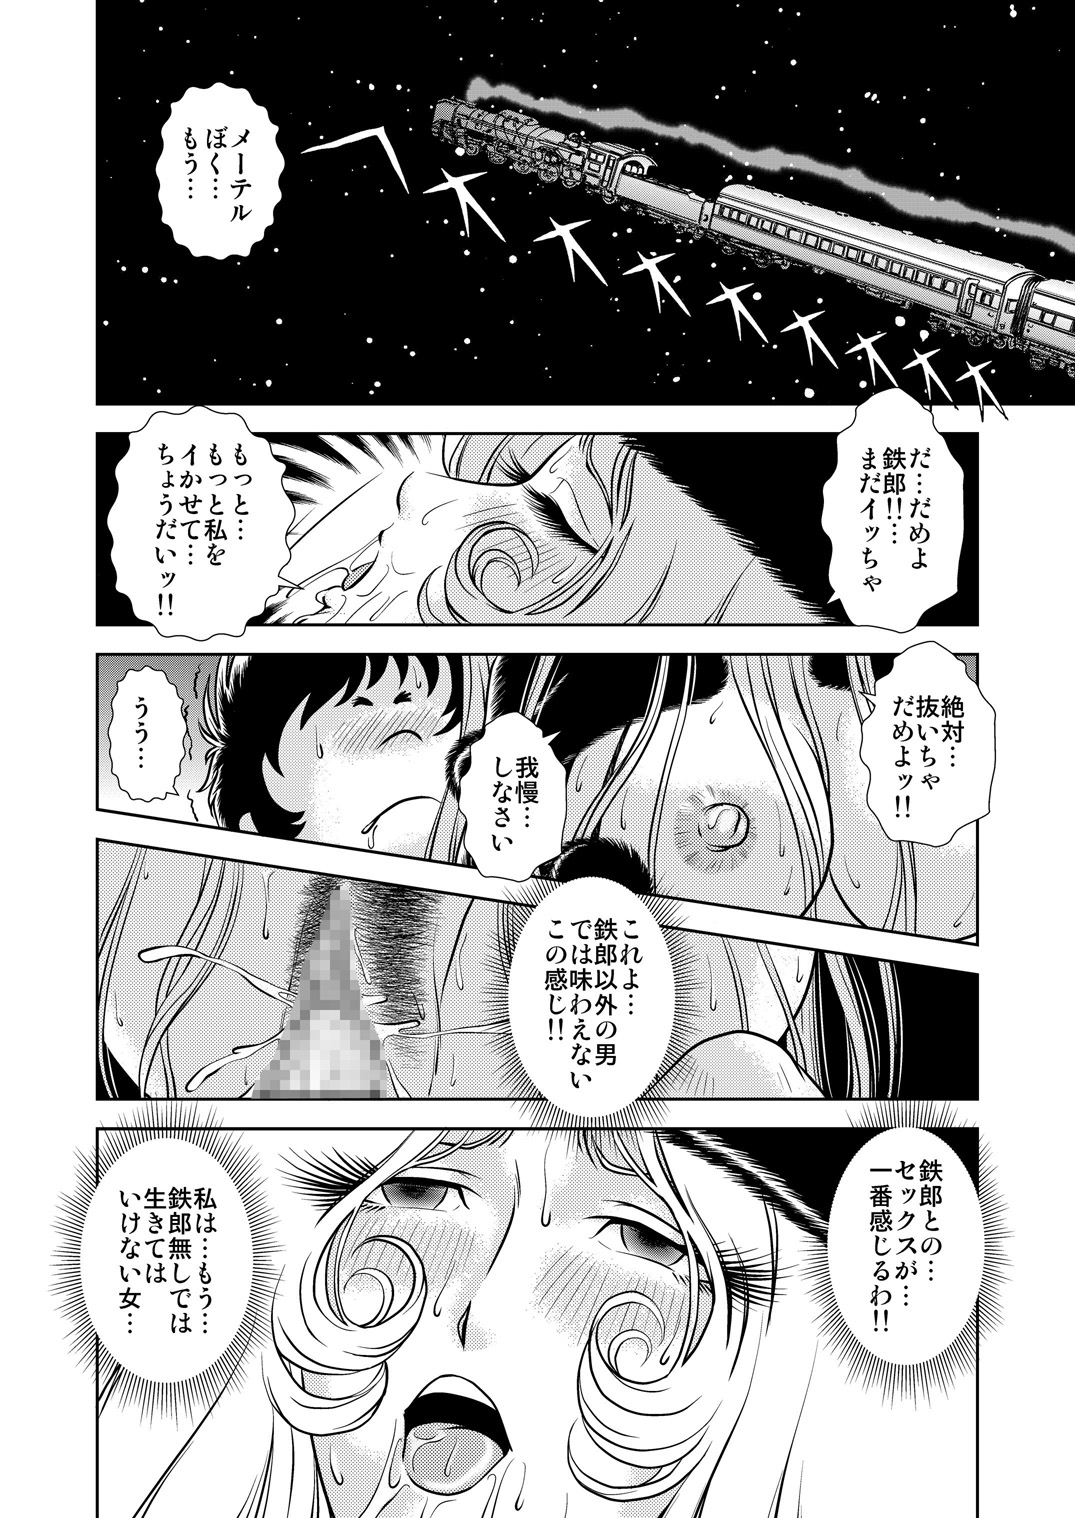 [かぐや姫] Maetel Story 7 (銀河鉄道999)